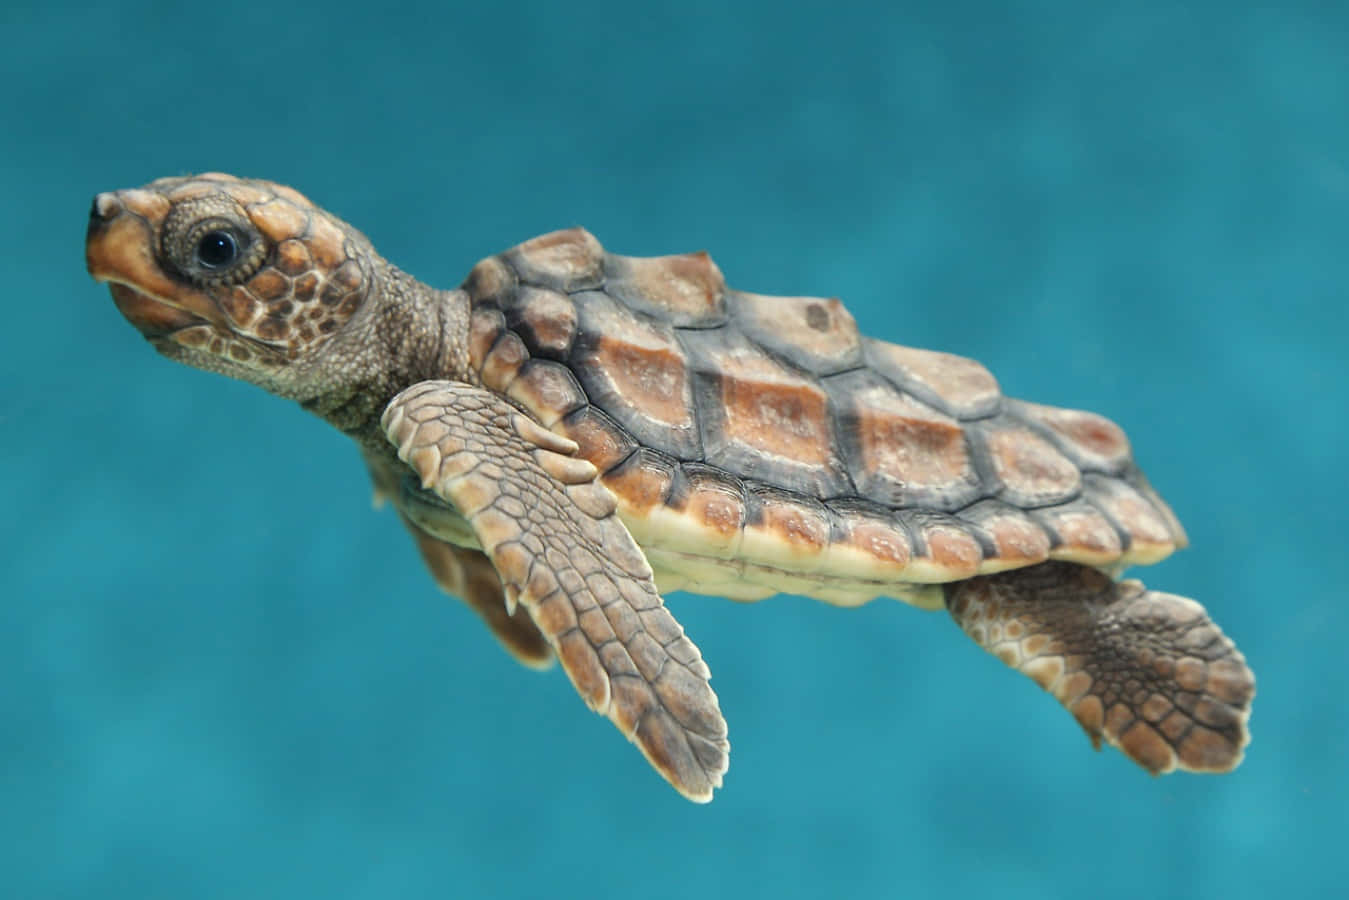 Einesüße Kleine Meeresschildkröte Schaut Zur Kamera Hoch.